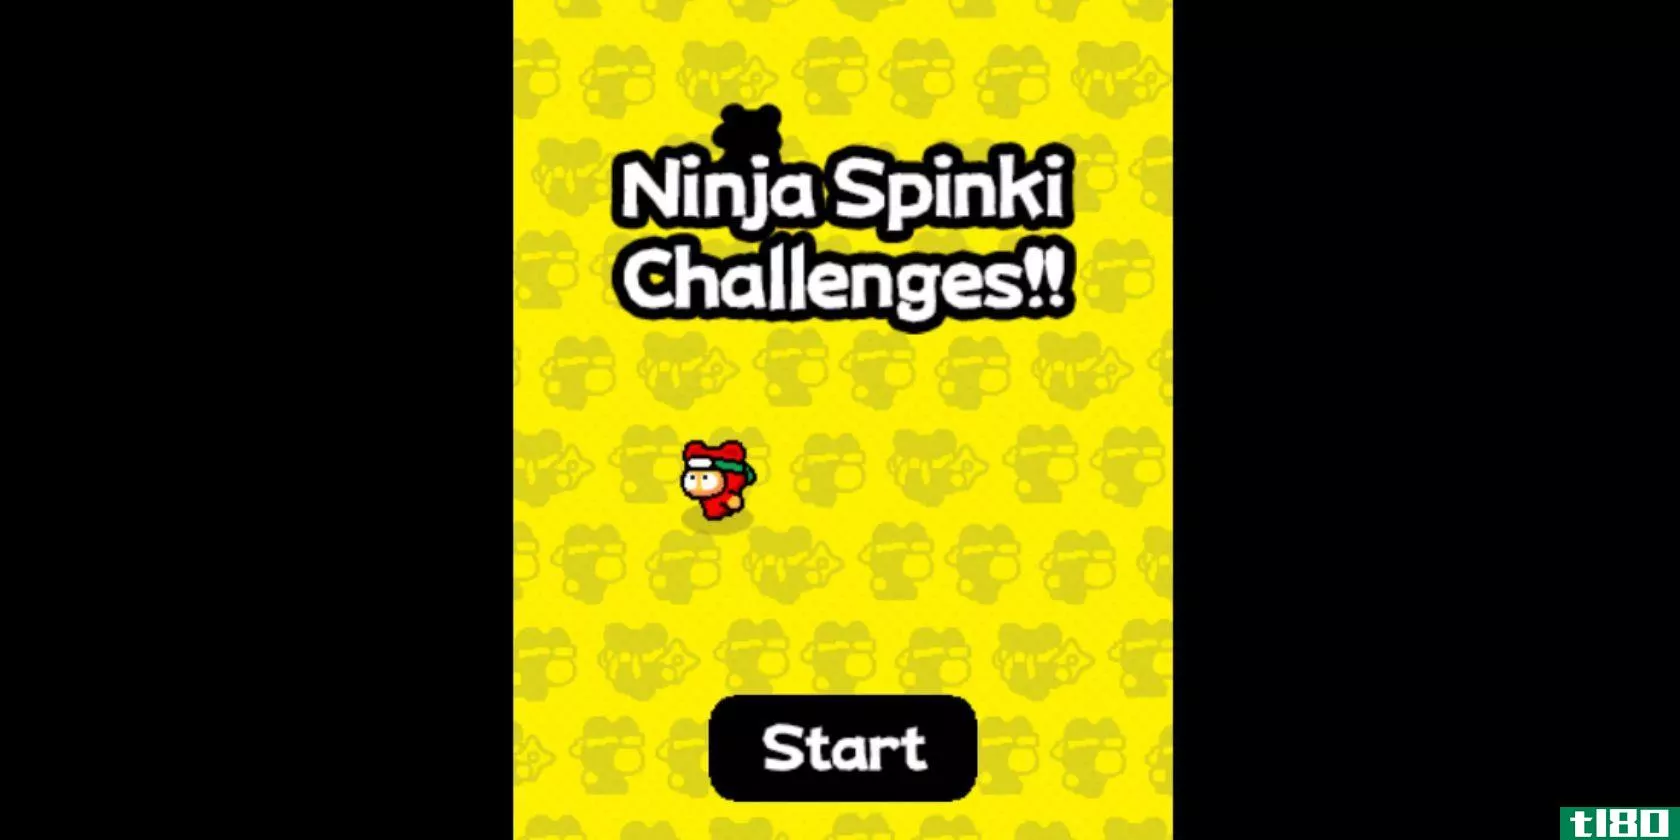 ninja-spinki-challenges-start-screen